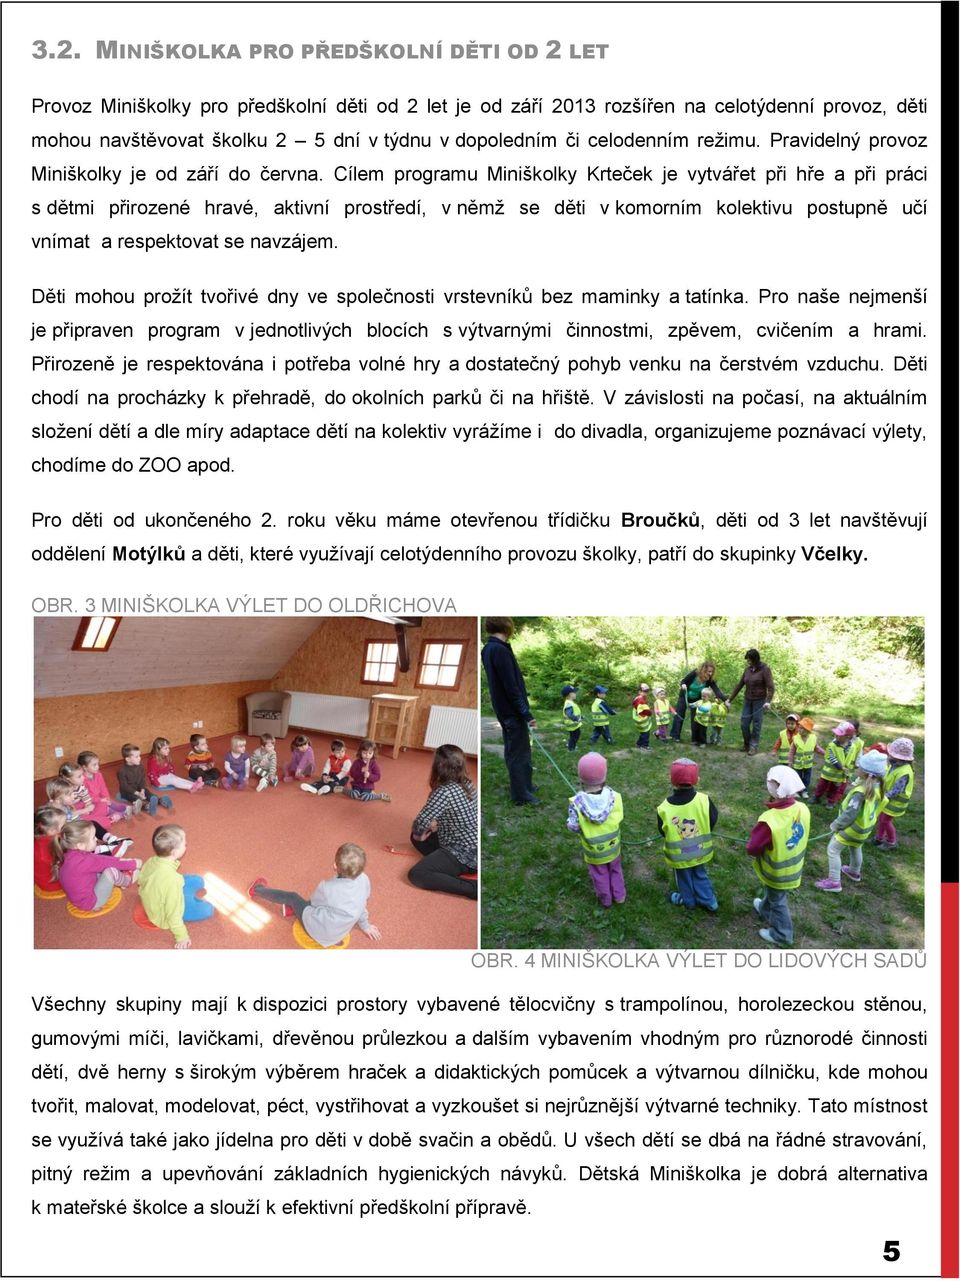 Cílem programu Miniškolky Krteček je vytvářet při hře a při práci s dětmi přirozené hravé, aktivní prostředí, v němž se děti v komorním kolektivu postupně učí vnímat a respektovat se navzájem.